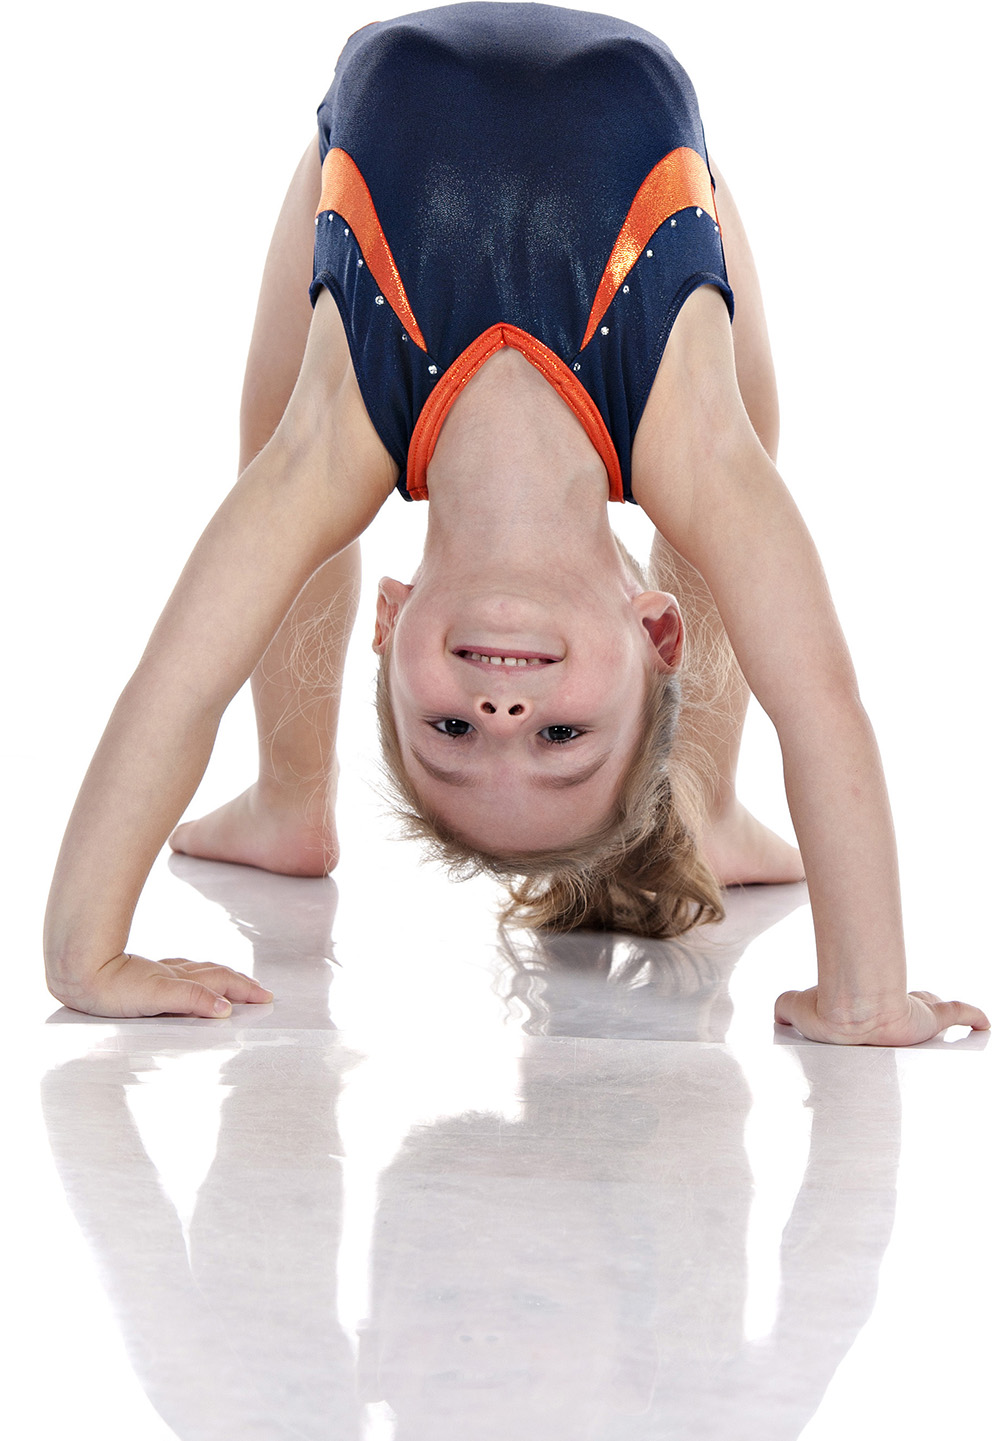 Pre-Competitive – Indigo Gymnastics